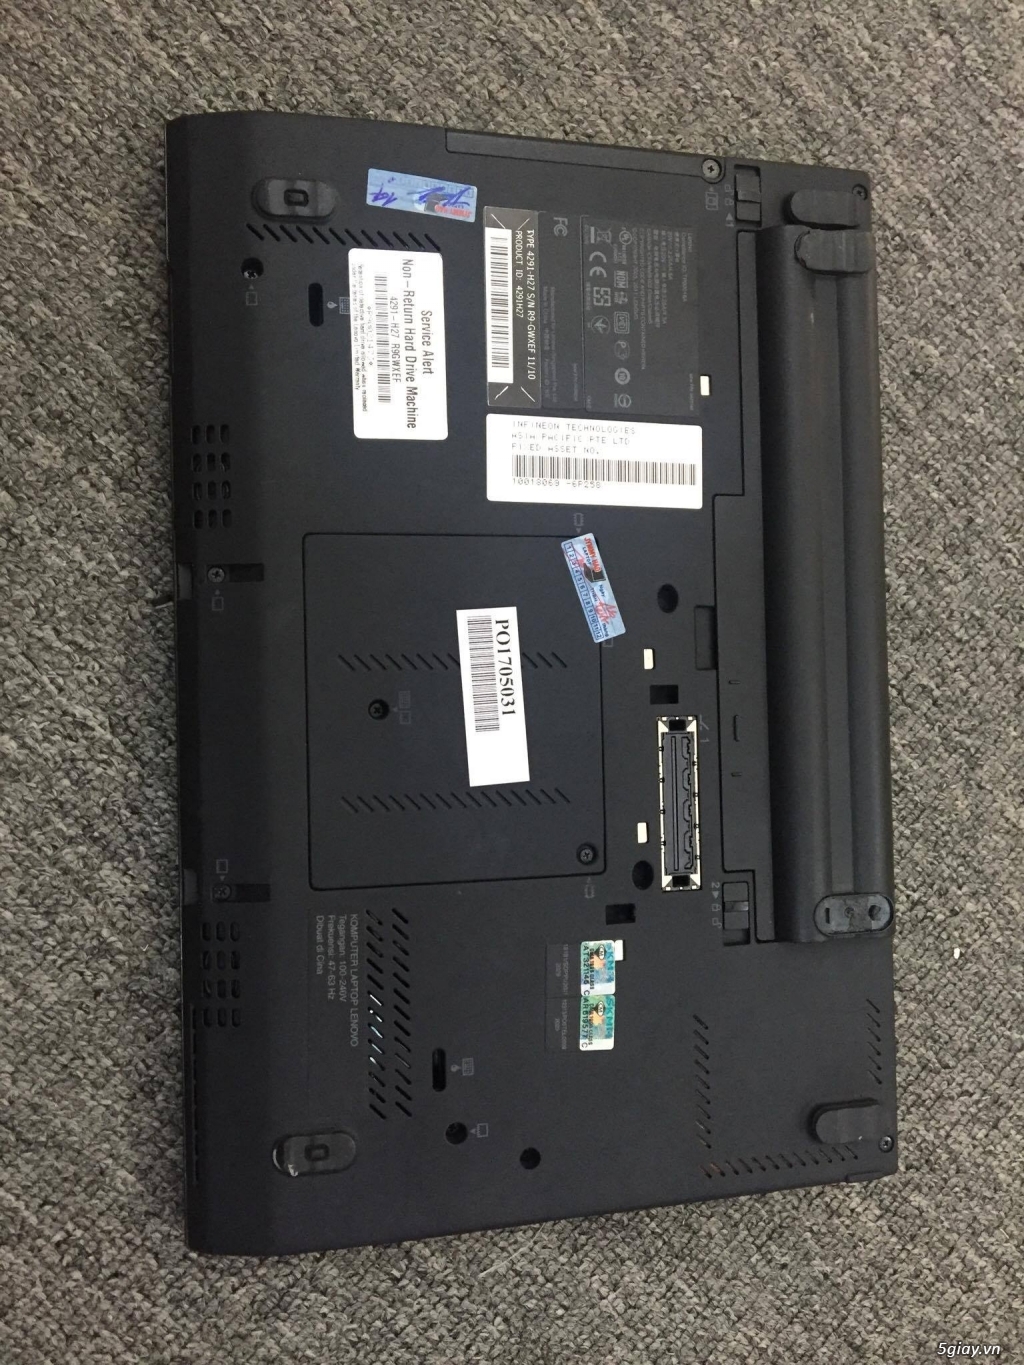 Laptop xách tay HP8540P vs thinkpad x220 - 3